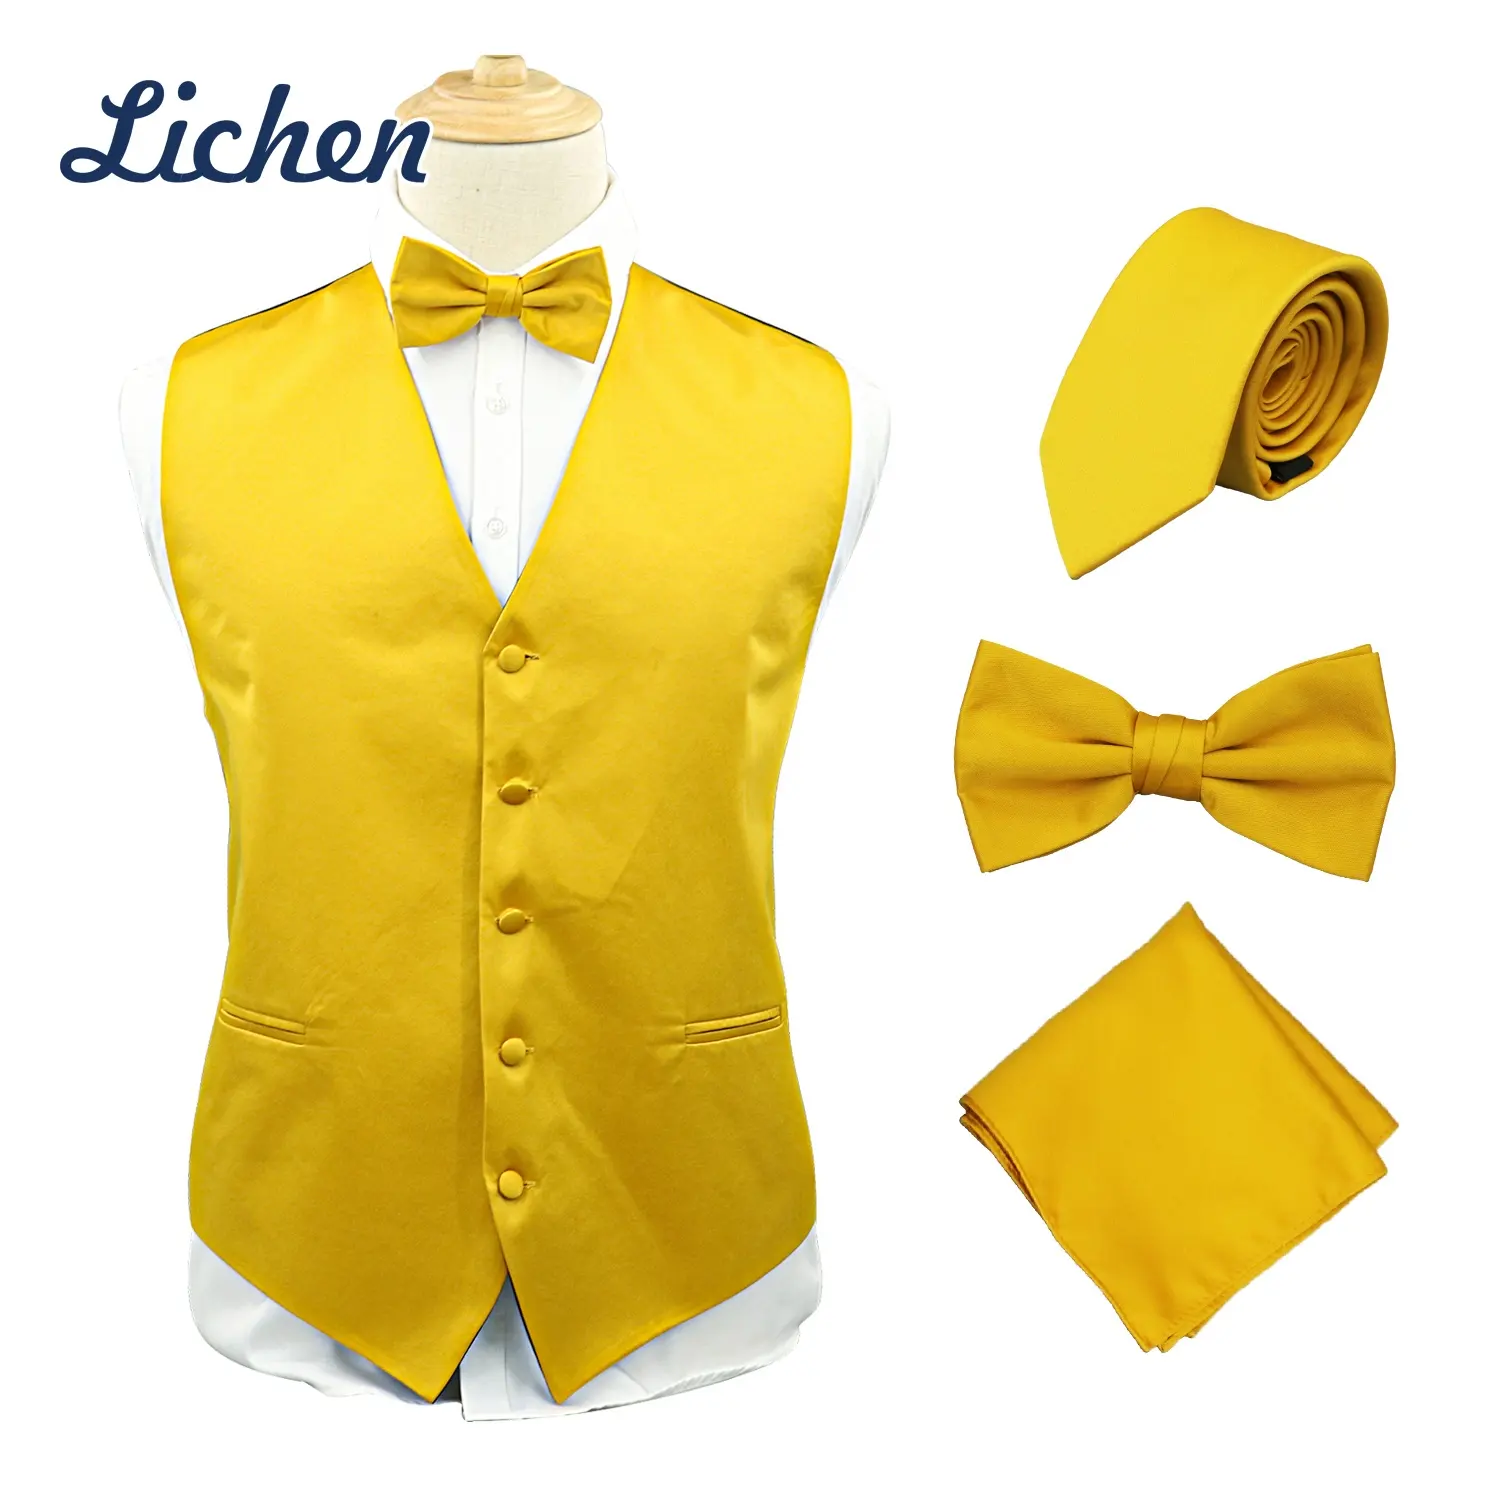 फैशन डिजाइन ठोस साटन रंगीन सूट बनियान नेकटाई धनुष टाई वास्कट के लिए सेट